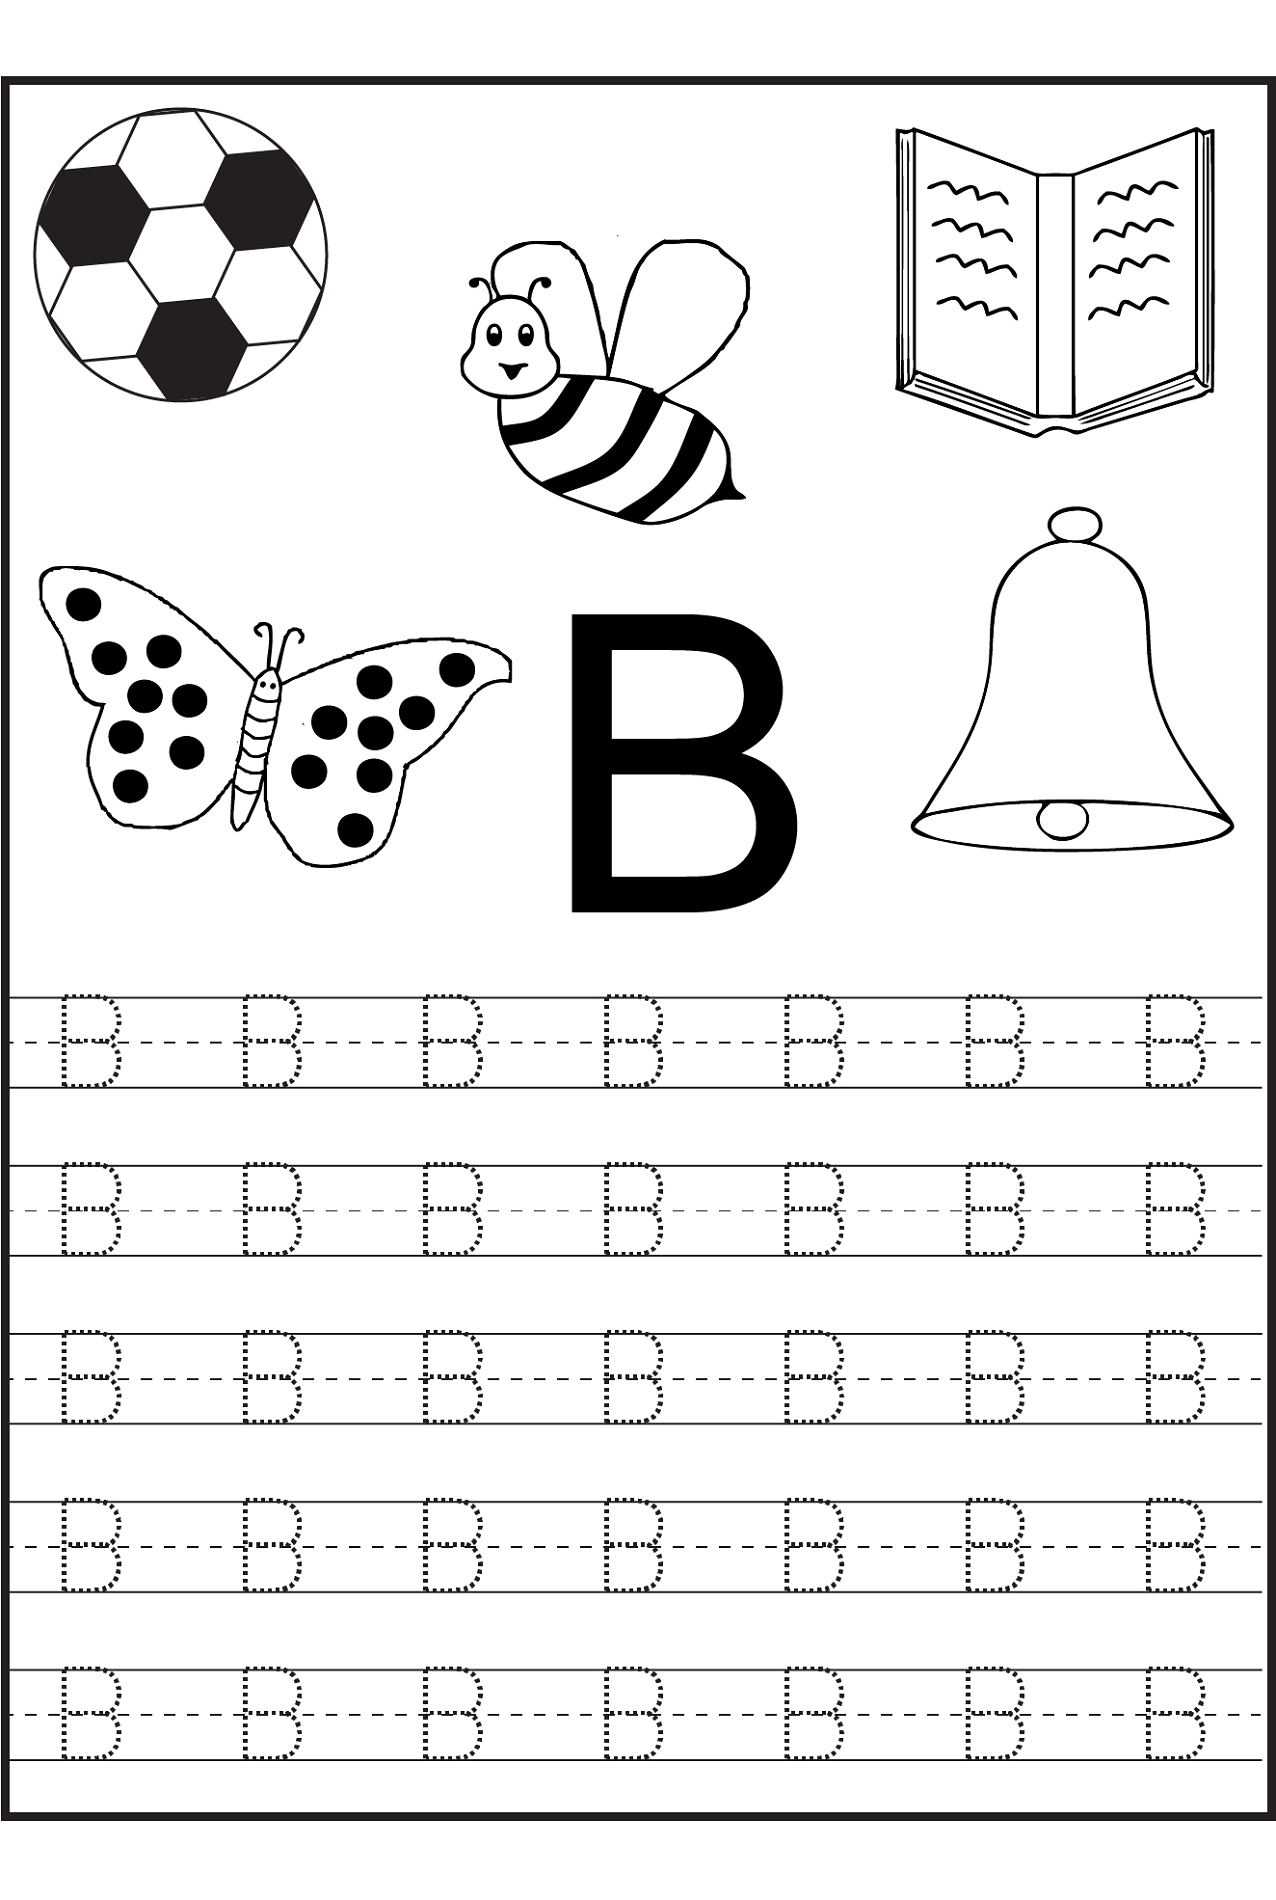 Worksheets For Letter B E